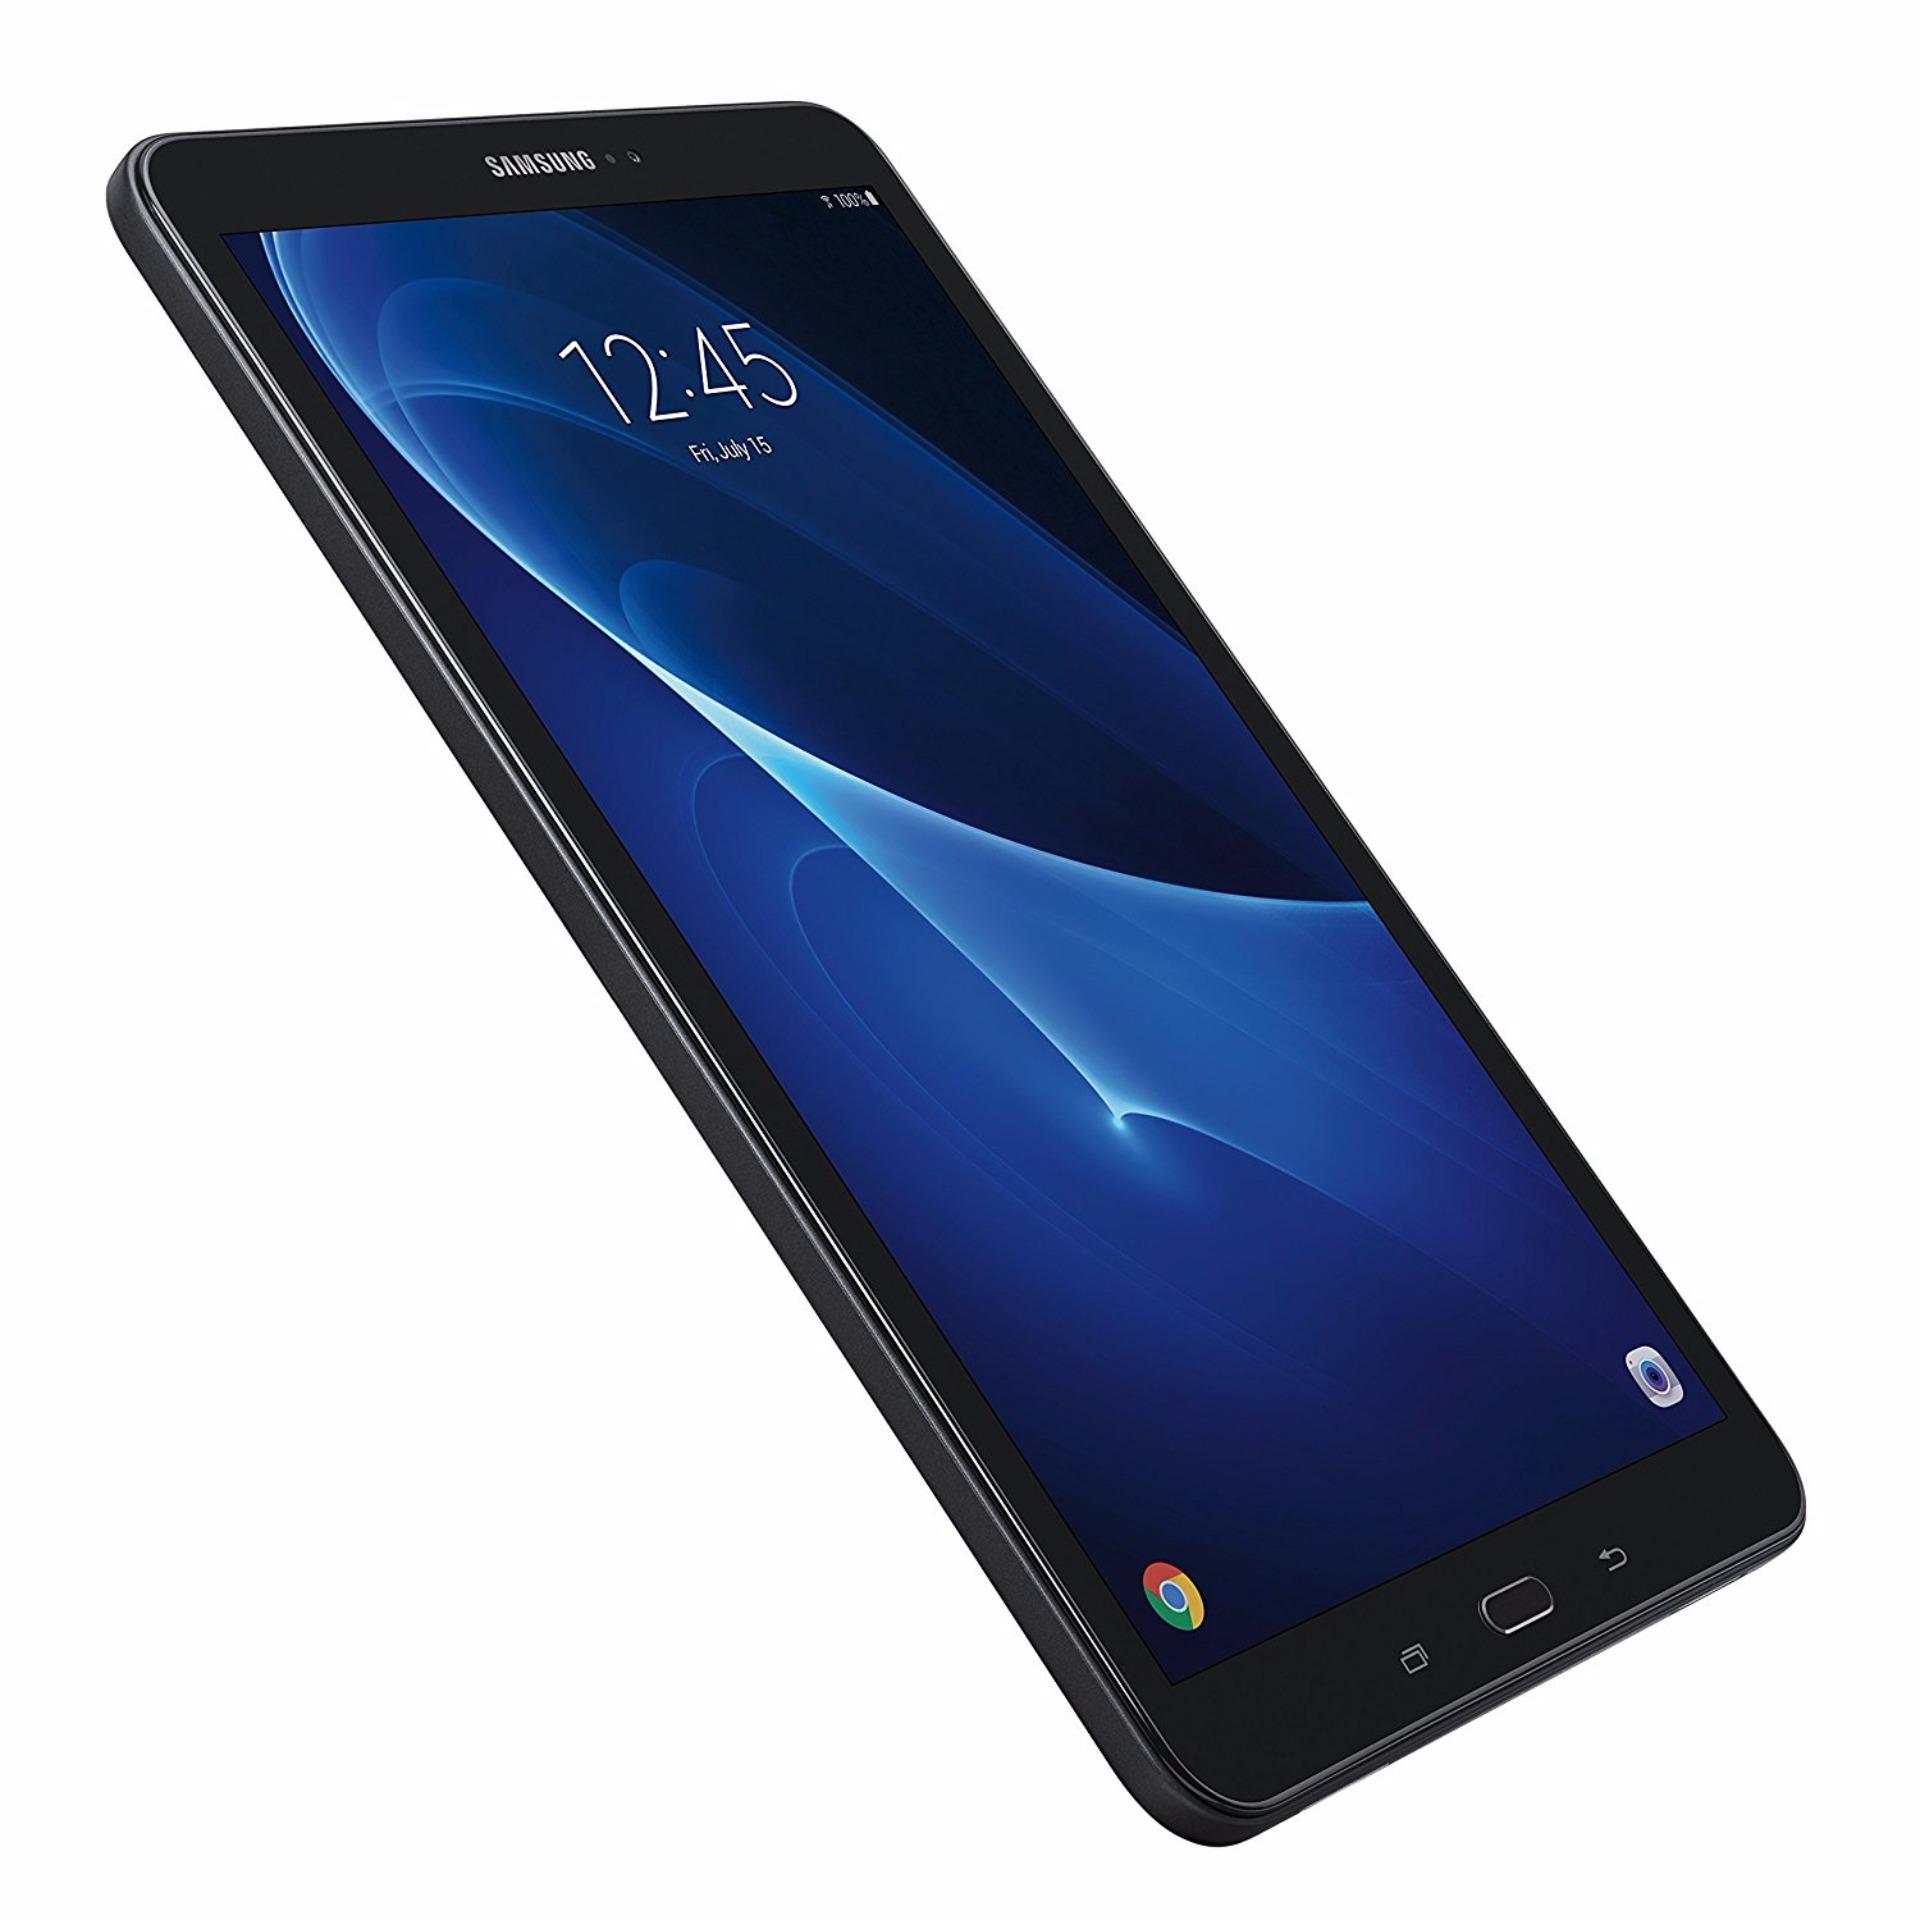 (Refurbished) Samsung Galaxy Tab A 10.1